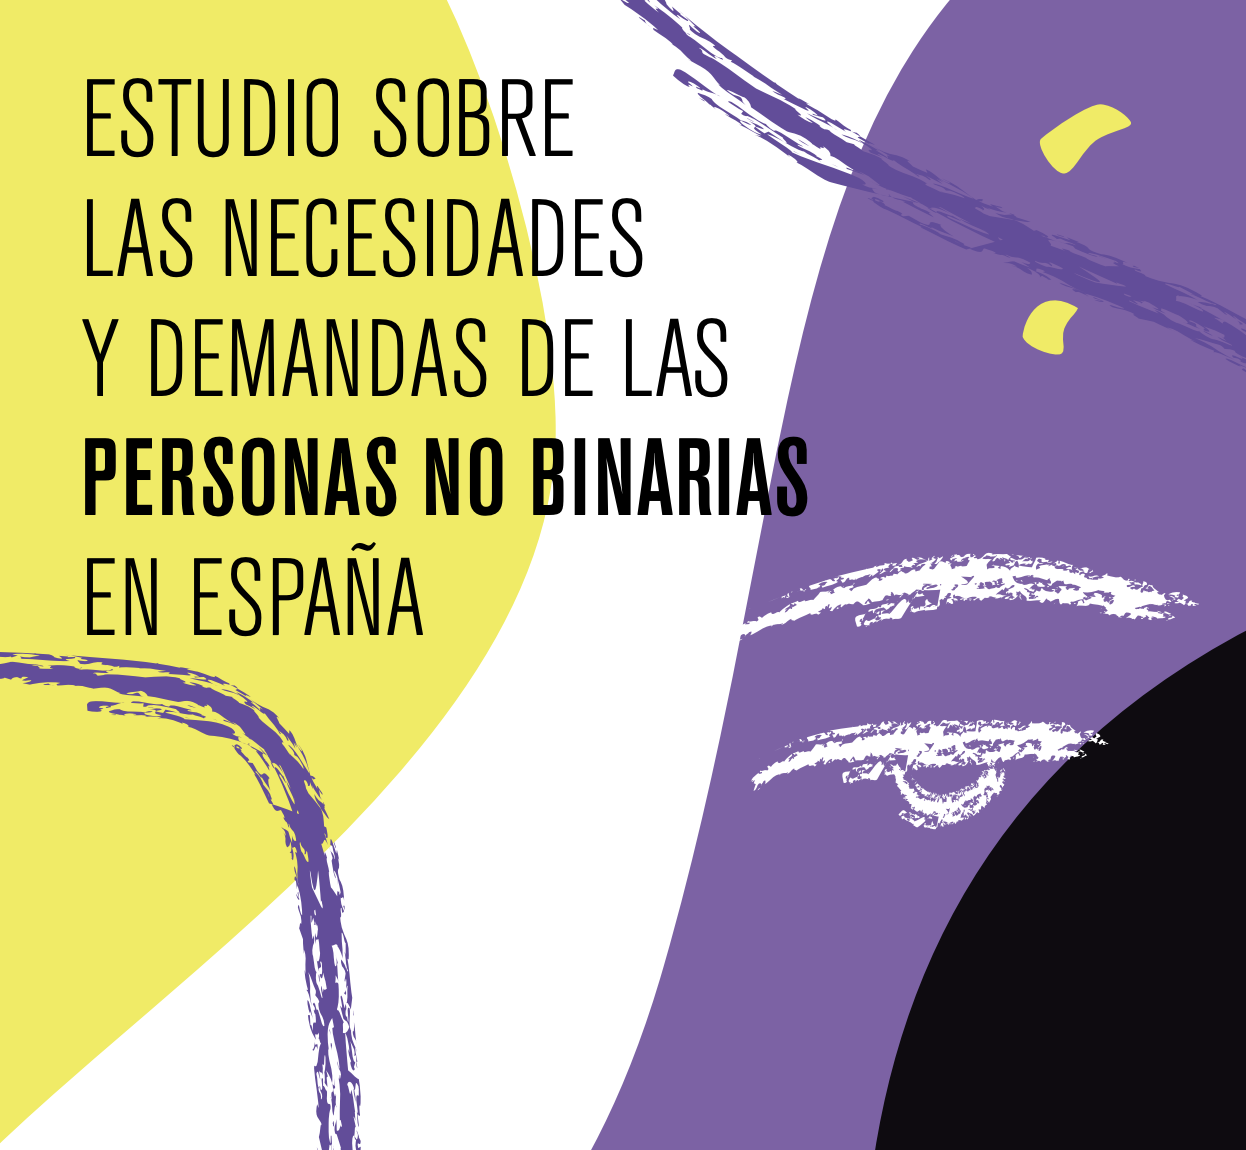 Imagen de la portada del Estudio sobre las necesidades y demandas de las personas no binarias en España